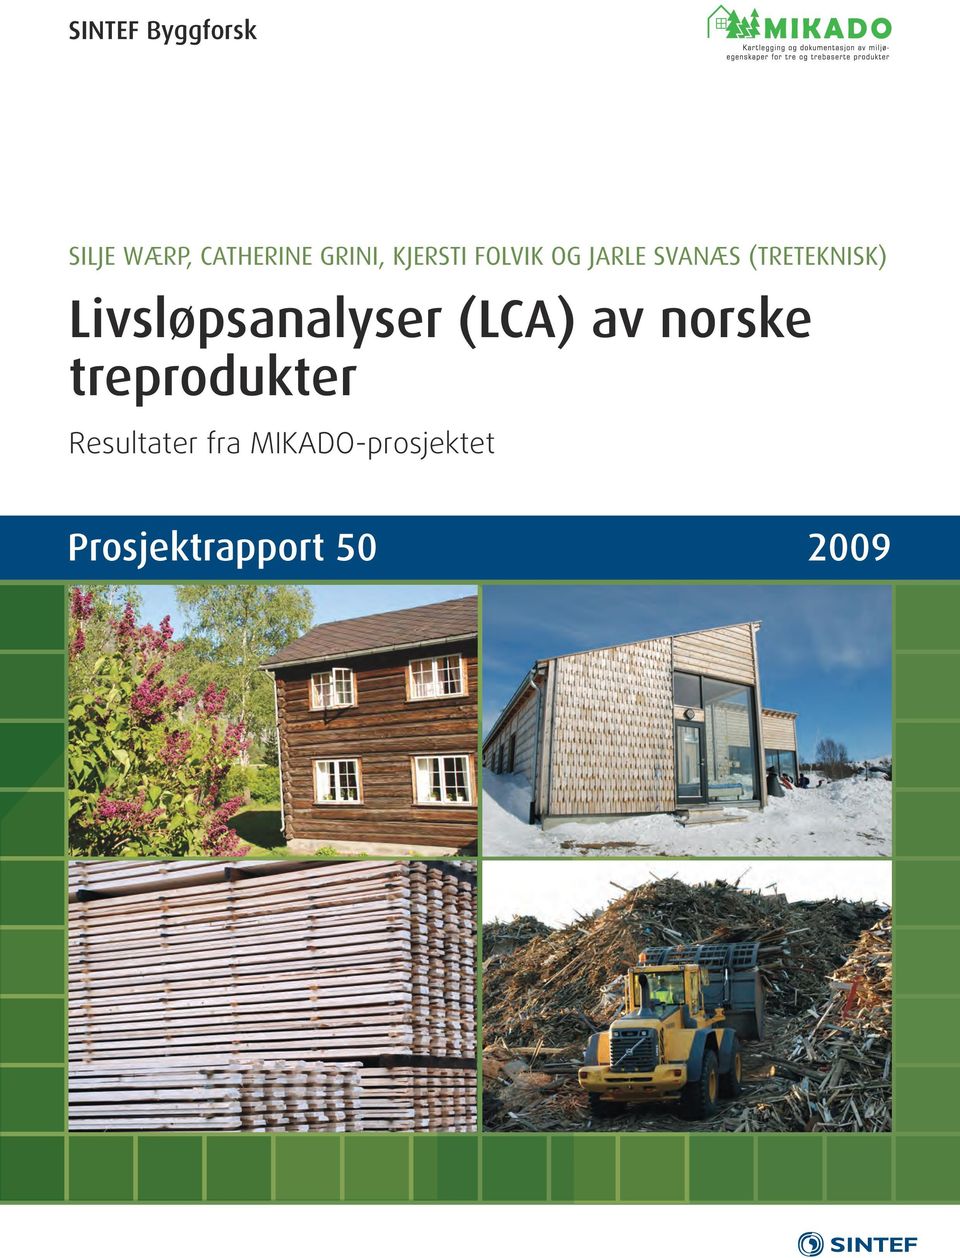 Livsløpsanalyser (LCA) av norske treprodukter